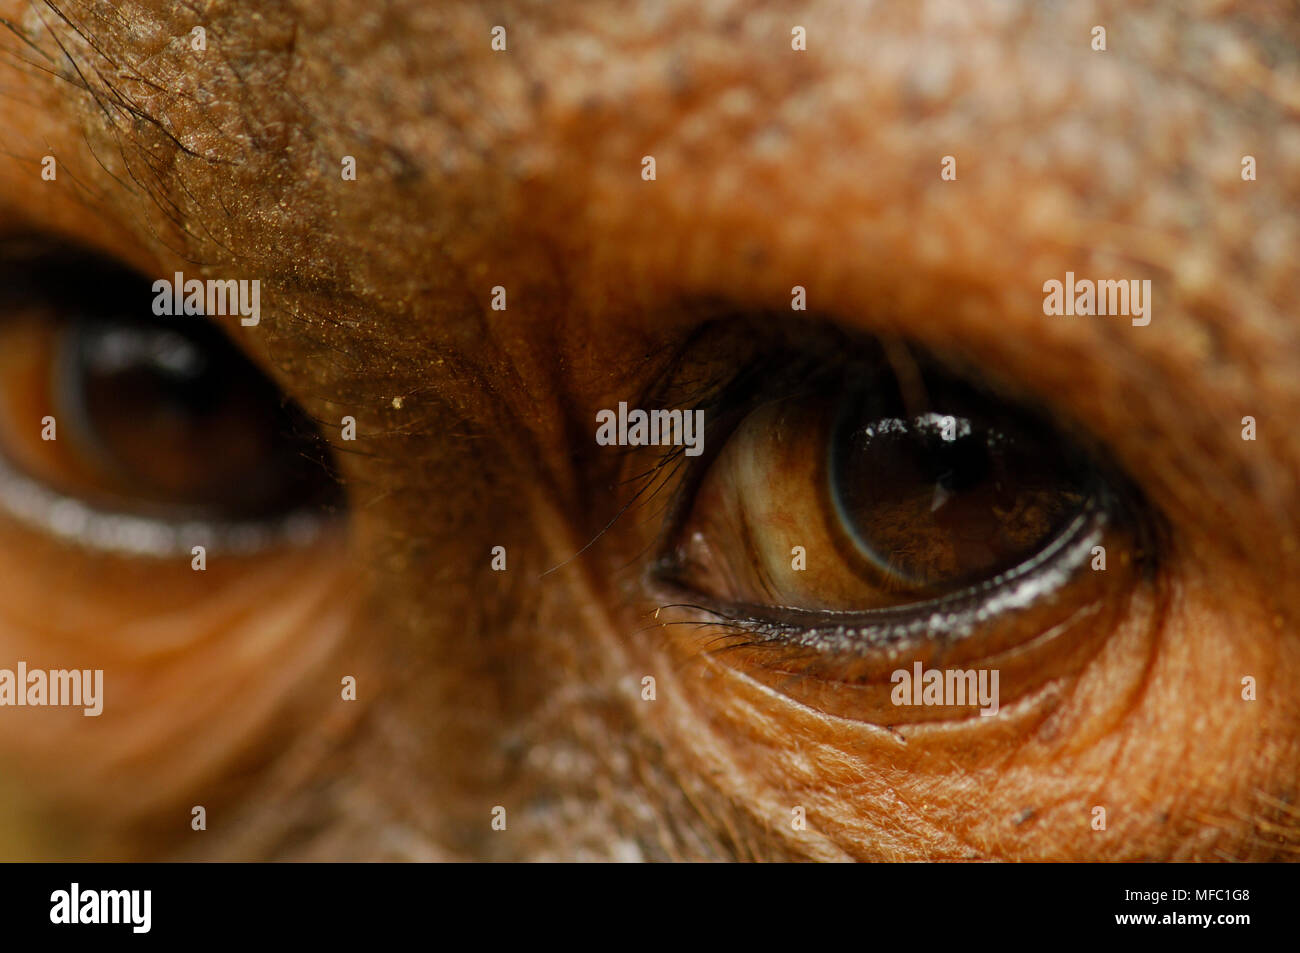 ORANGUTAN Pongo pygmaeus eye detail Borneo, Malaysia. Stock Photo